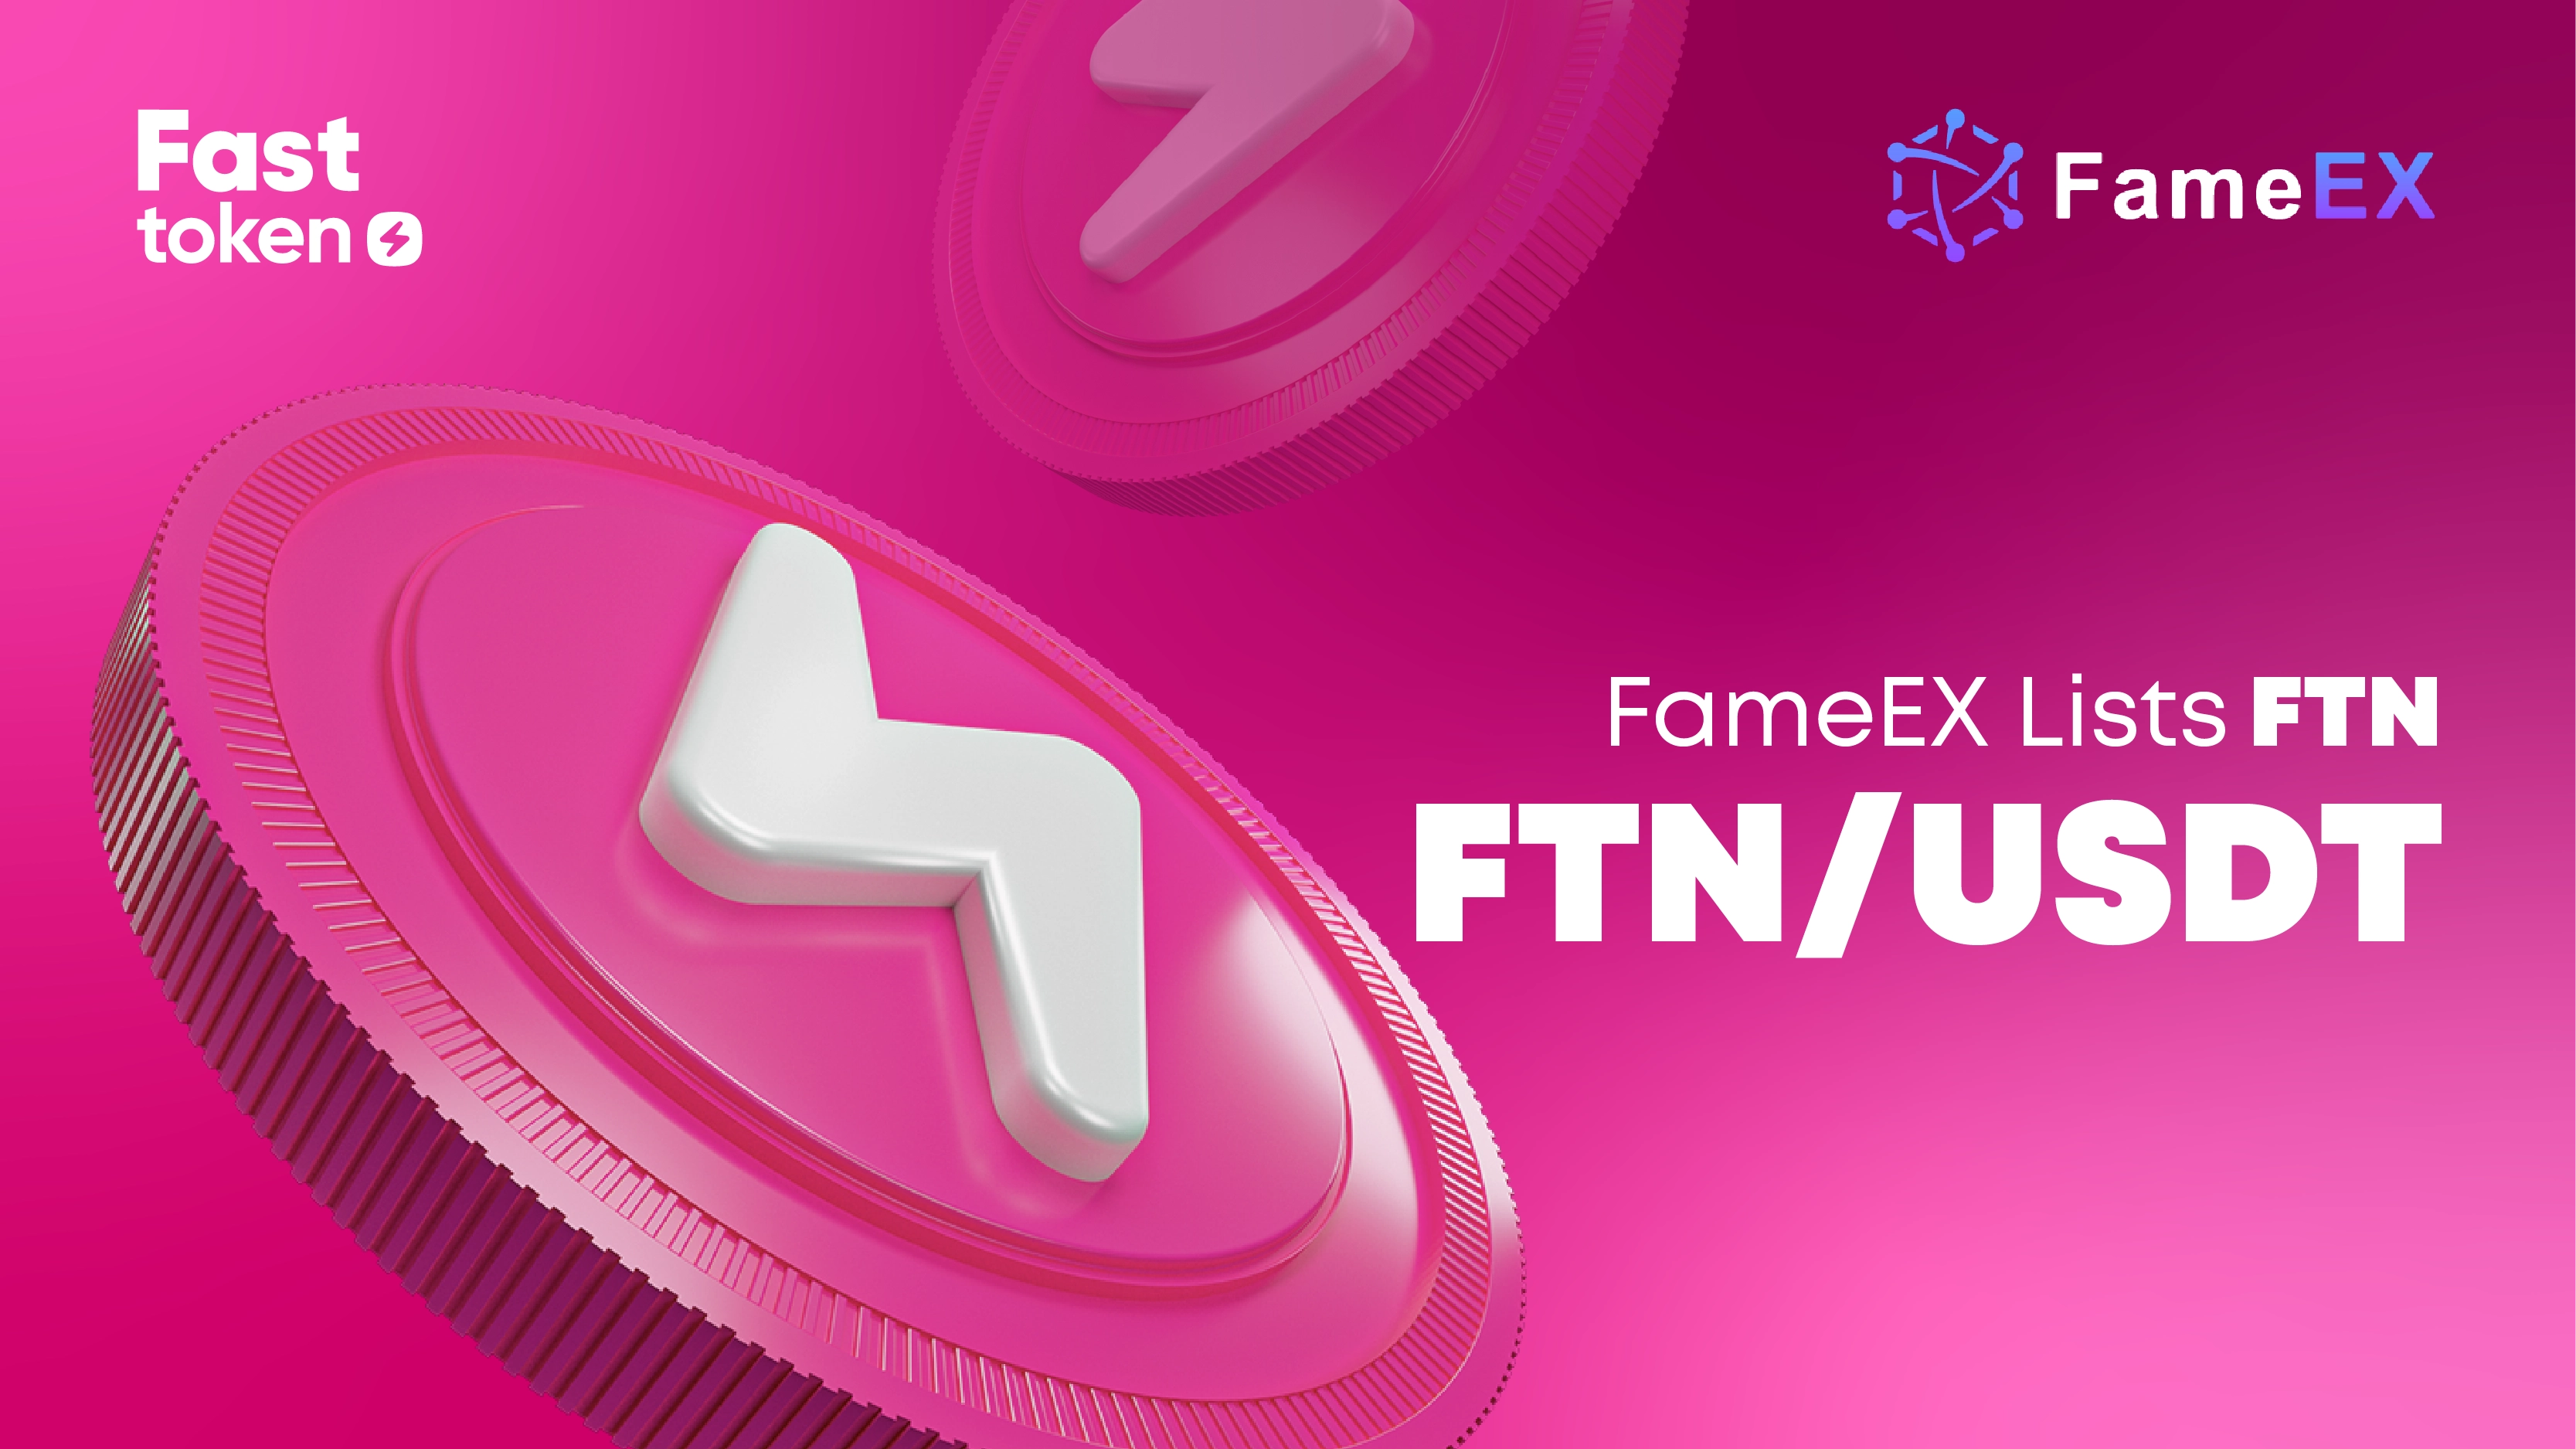 Fasttoken (FTN) 现已在FameEX上上市